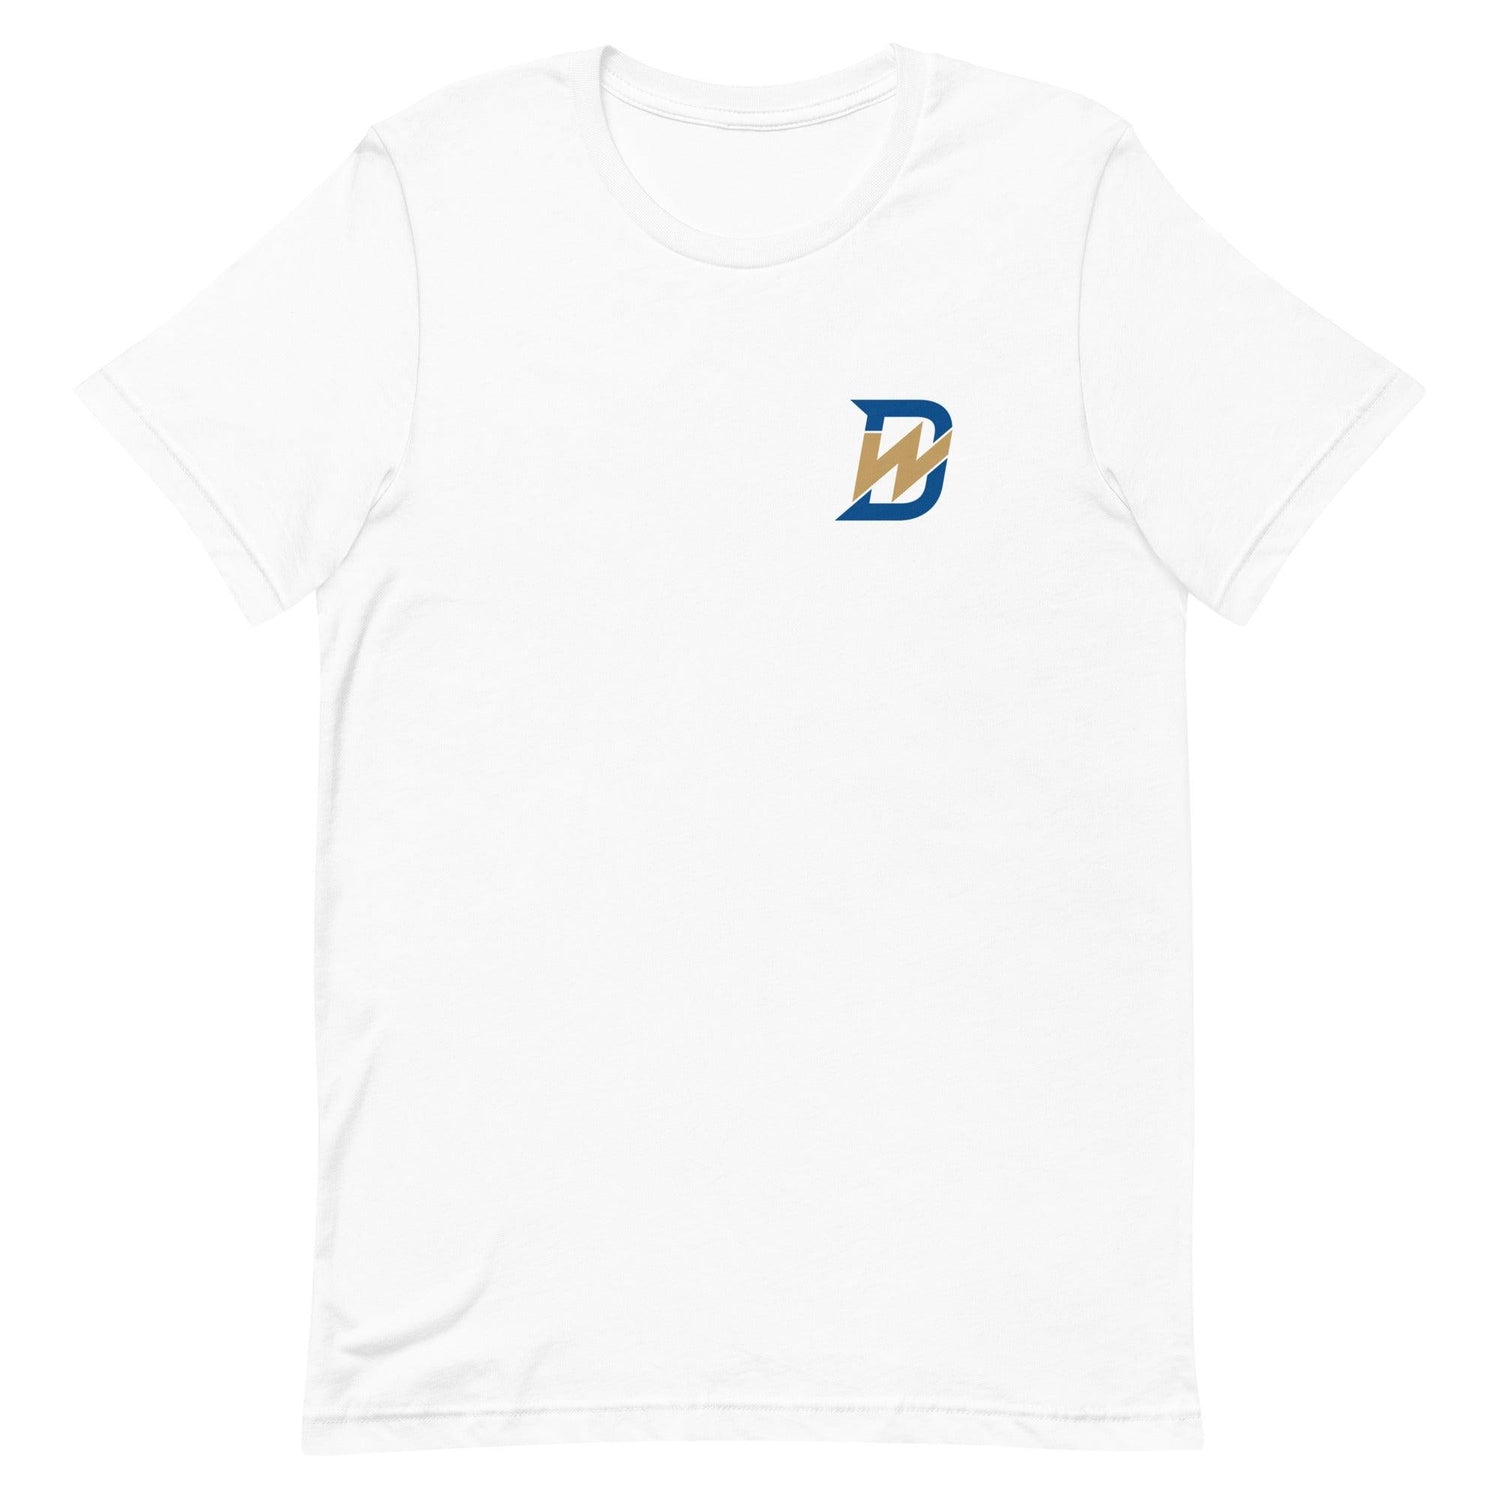 Drew Waters “DW” t-shirt - Fan Arch